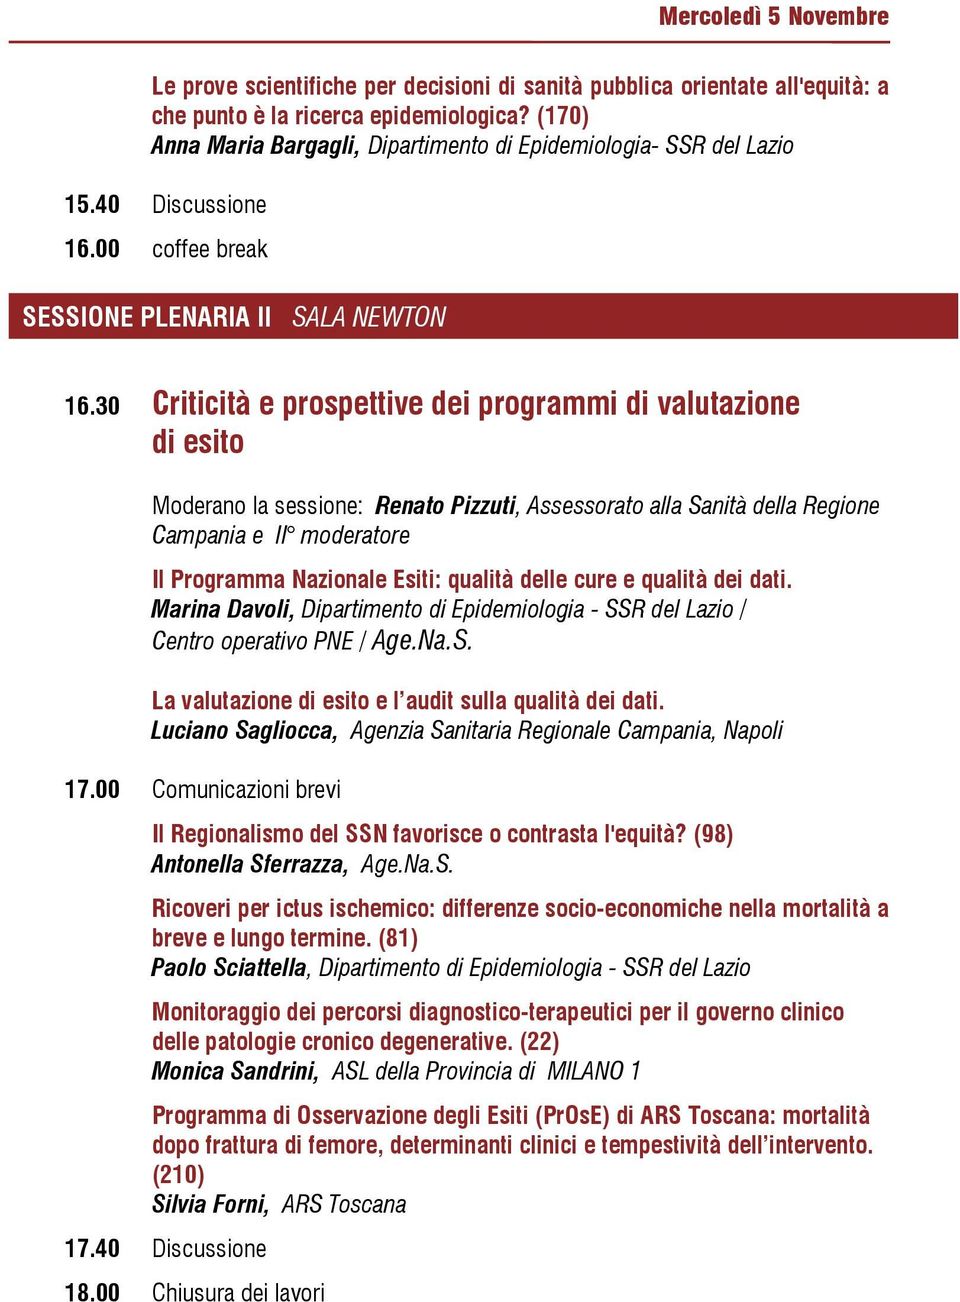 30 Criticità e prospettive dei programmi di valutazione di esito Moderano la sessione: Renato Pizzuti, Assessorato alla Sanità della Regione Campania e II moderatore Il Programma Nazionale Esiti: